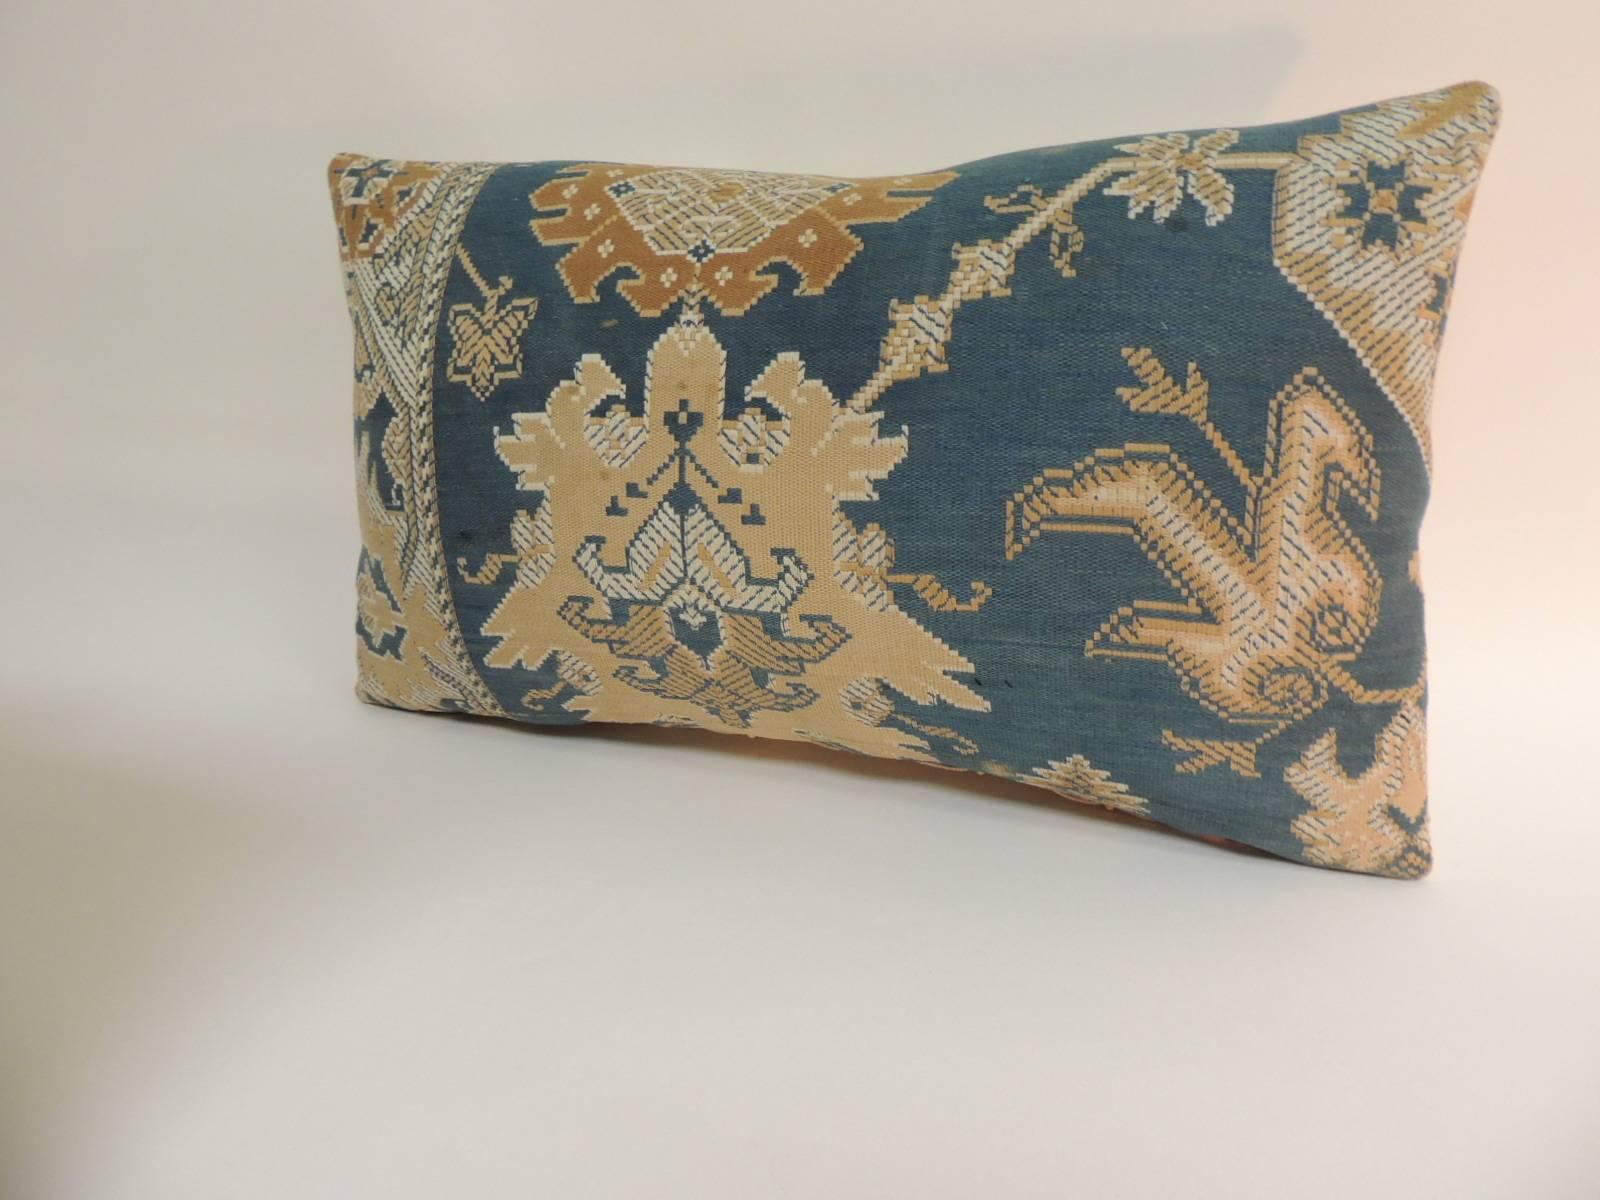 Arts and Crafts Pair of 19th Century Arts & Crafts Tan and Blue Decorative Lumbar Pillows